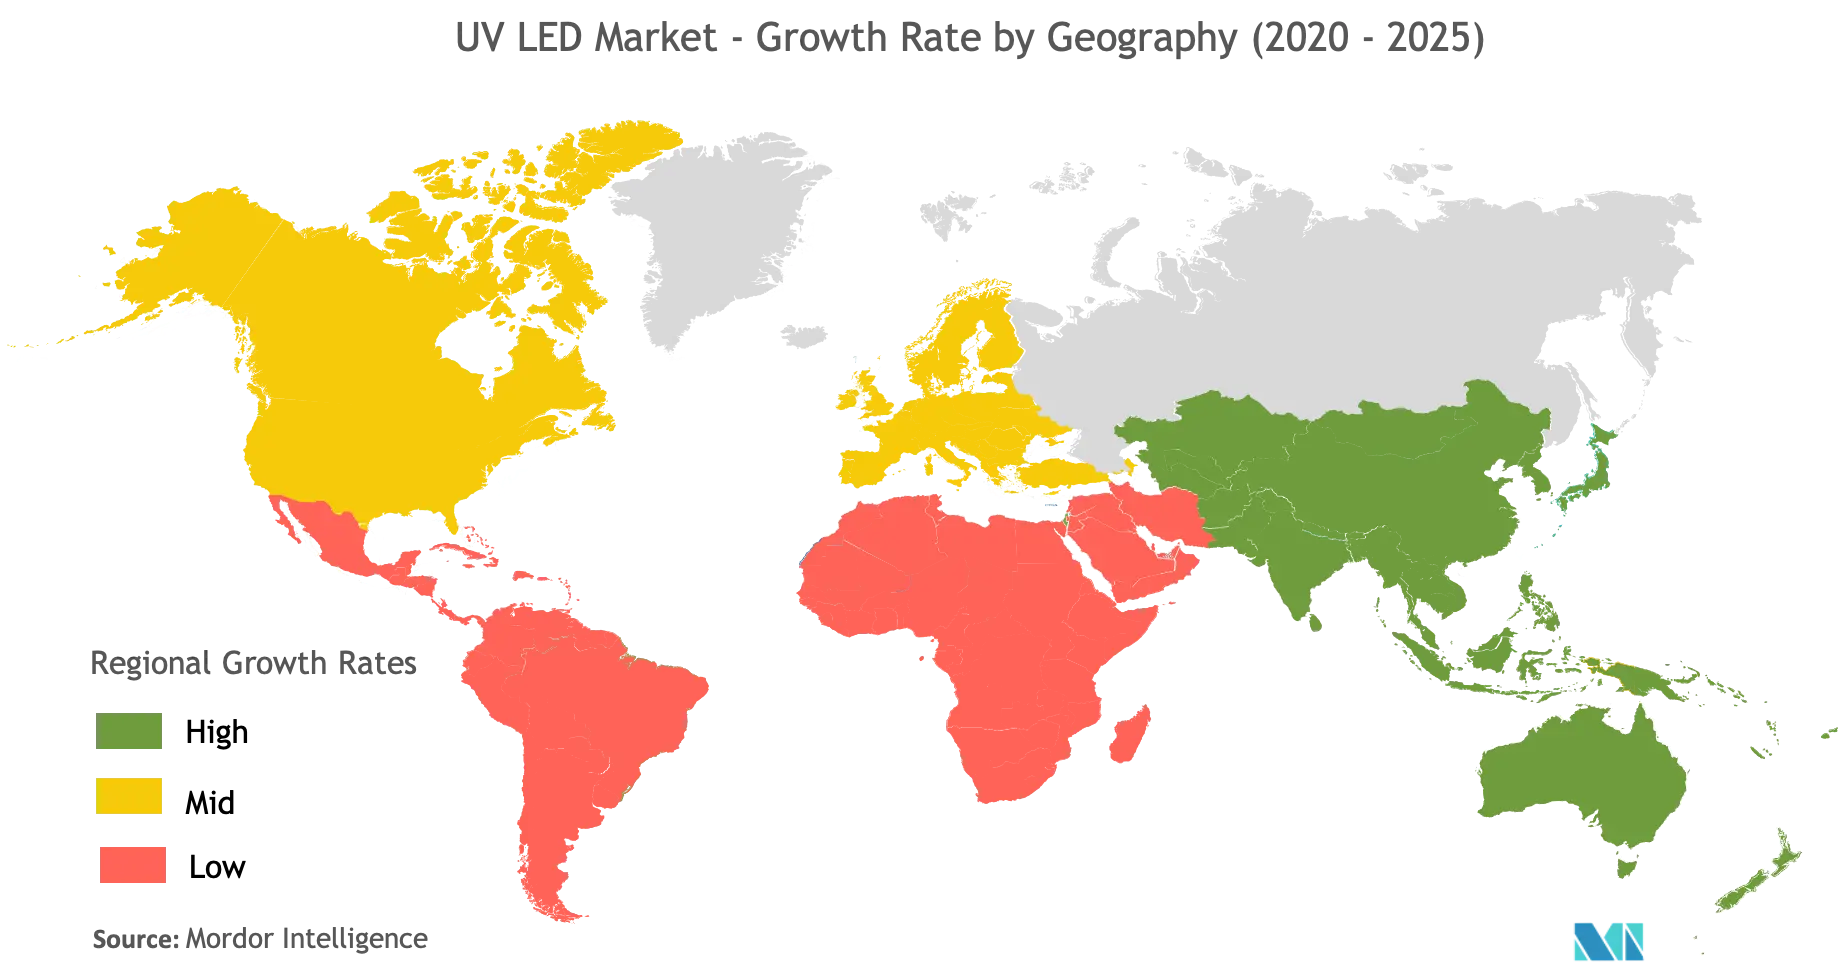 UV LED Market Growth